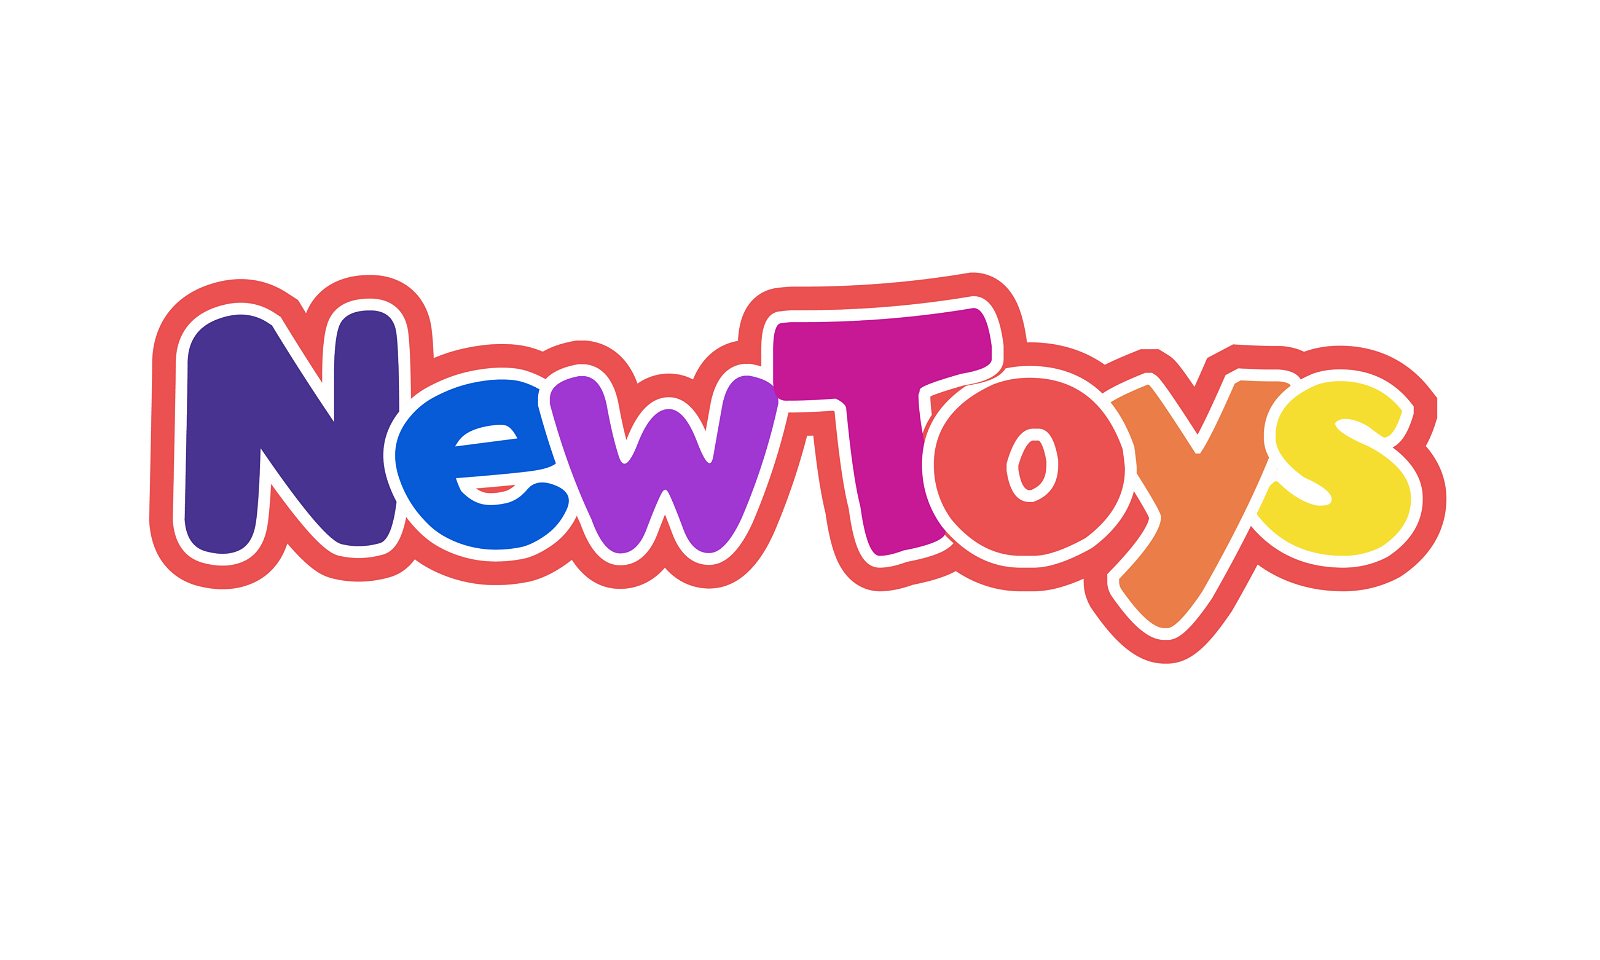 NewToys.com - Creative brandable domain for sale